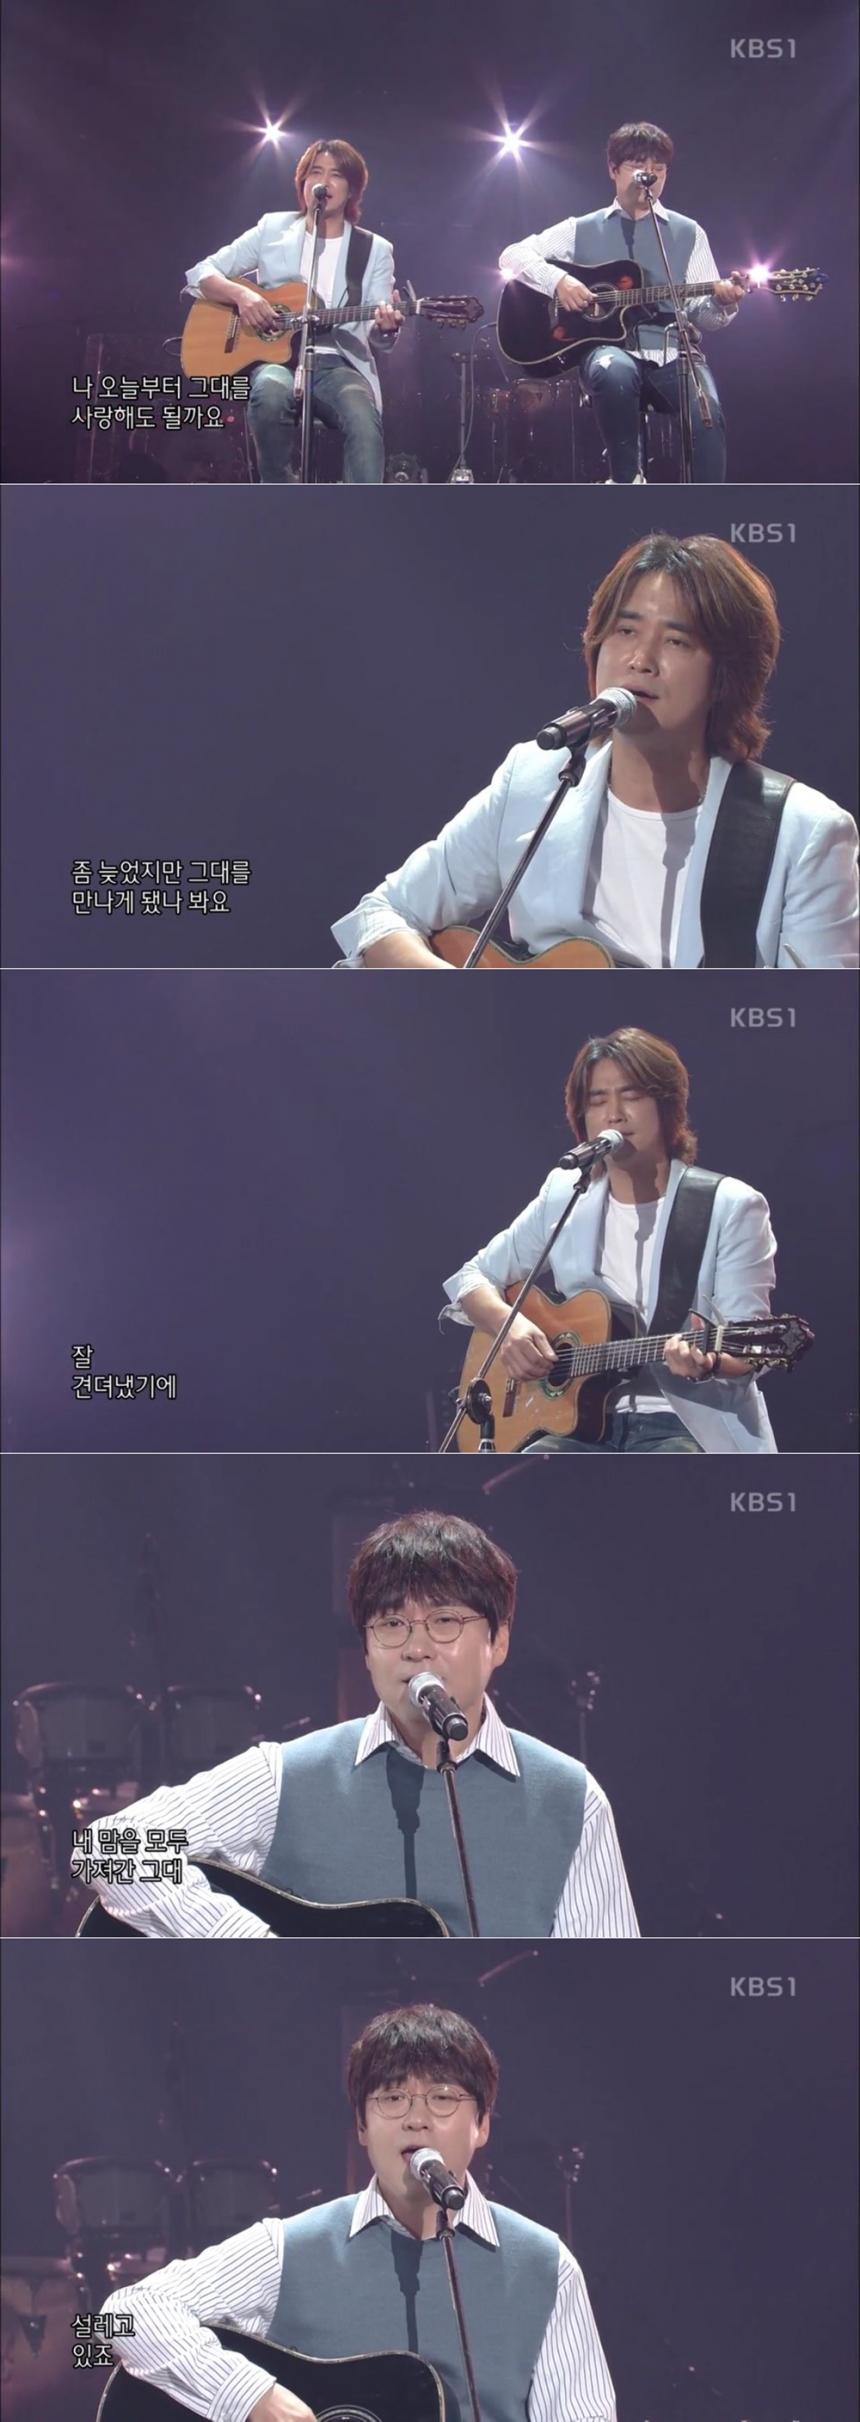 ‘콘서트7080’ 유리상자 / KBS 1TV ‘콘서트7080’ 방송 캡처